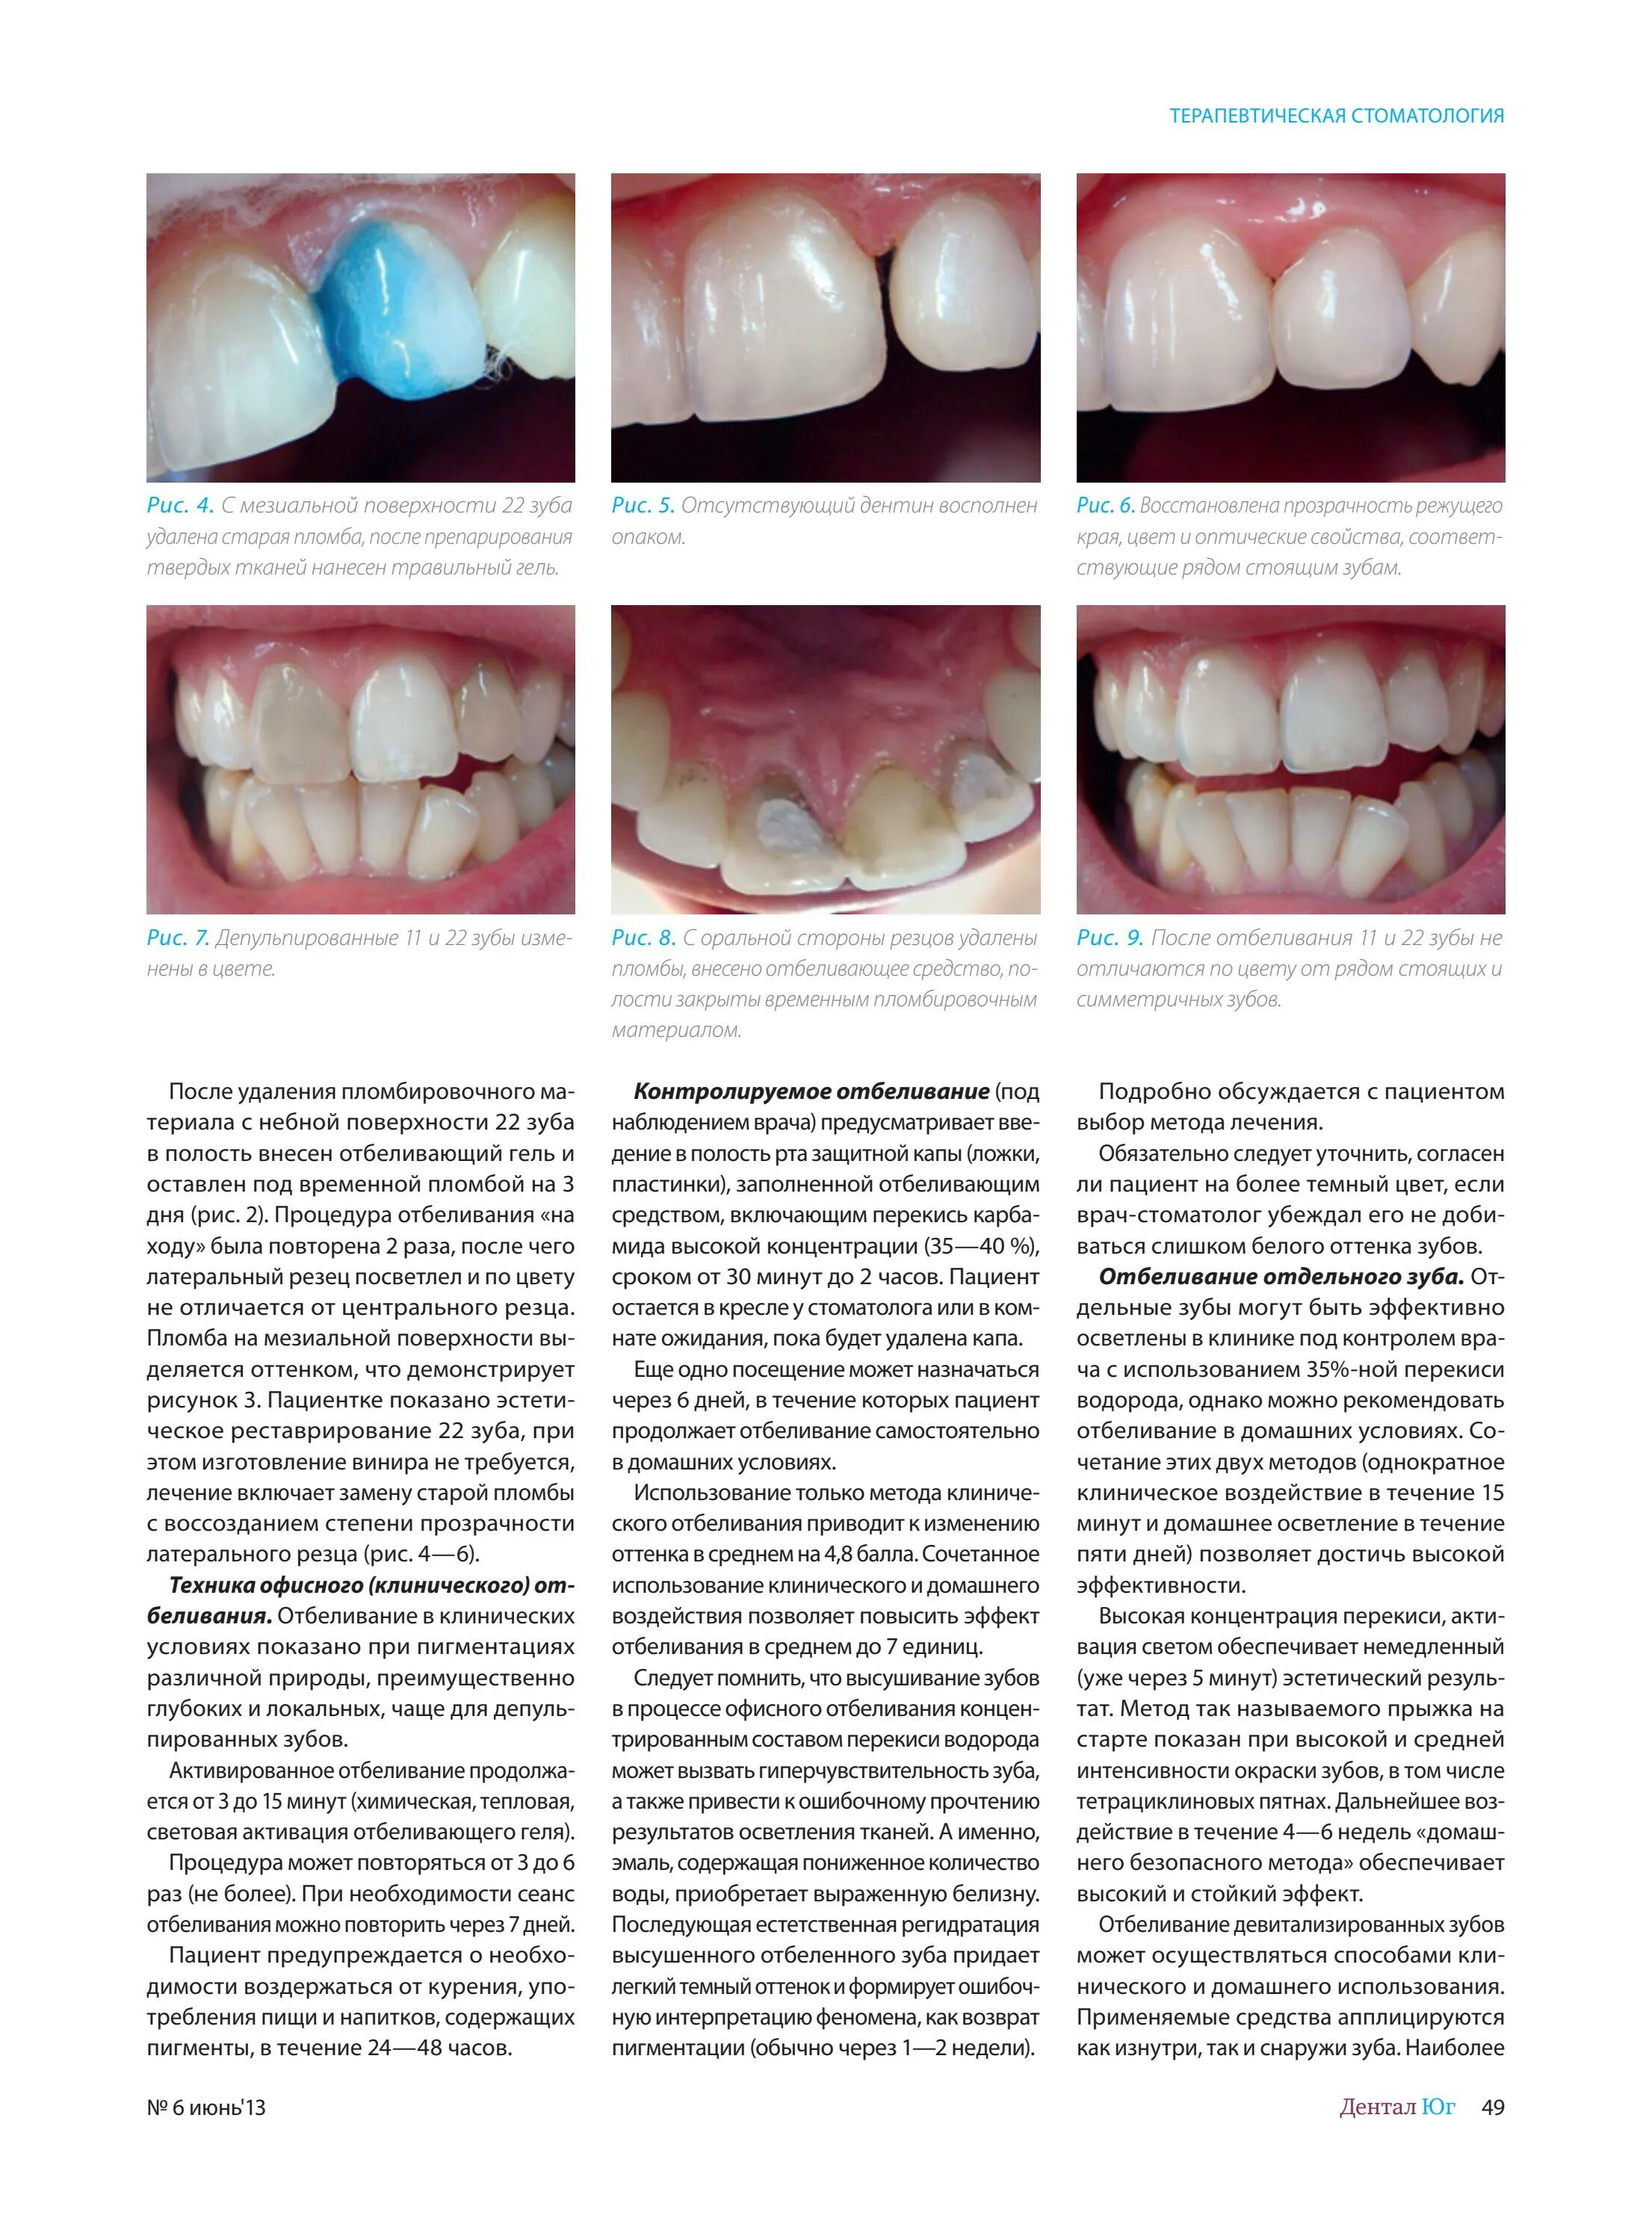 Можно ли есть зубы. Терапевтическая стоматология пломба. Пломба две поверхности зуба в стоматологии. Пломба для зубов для осветления.